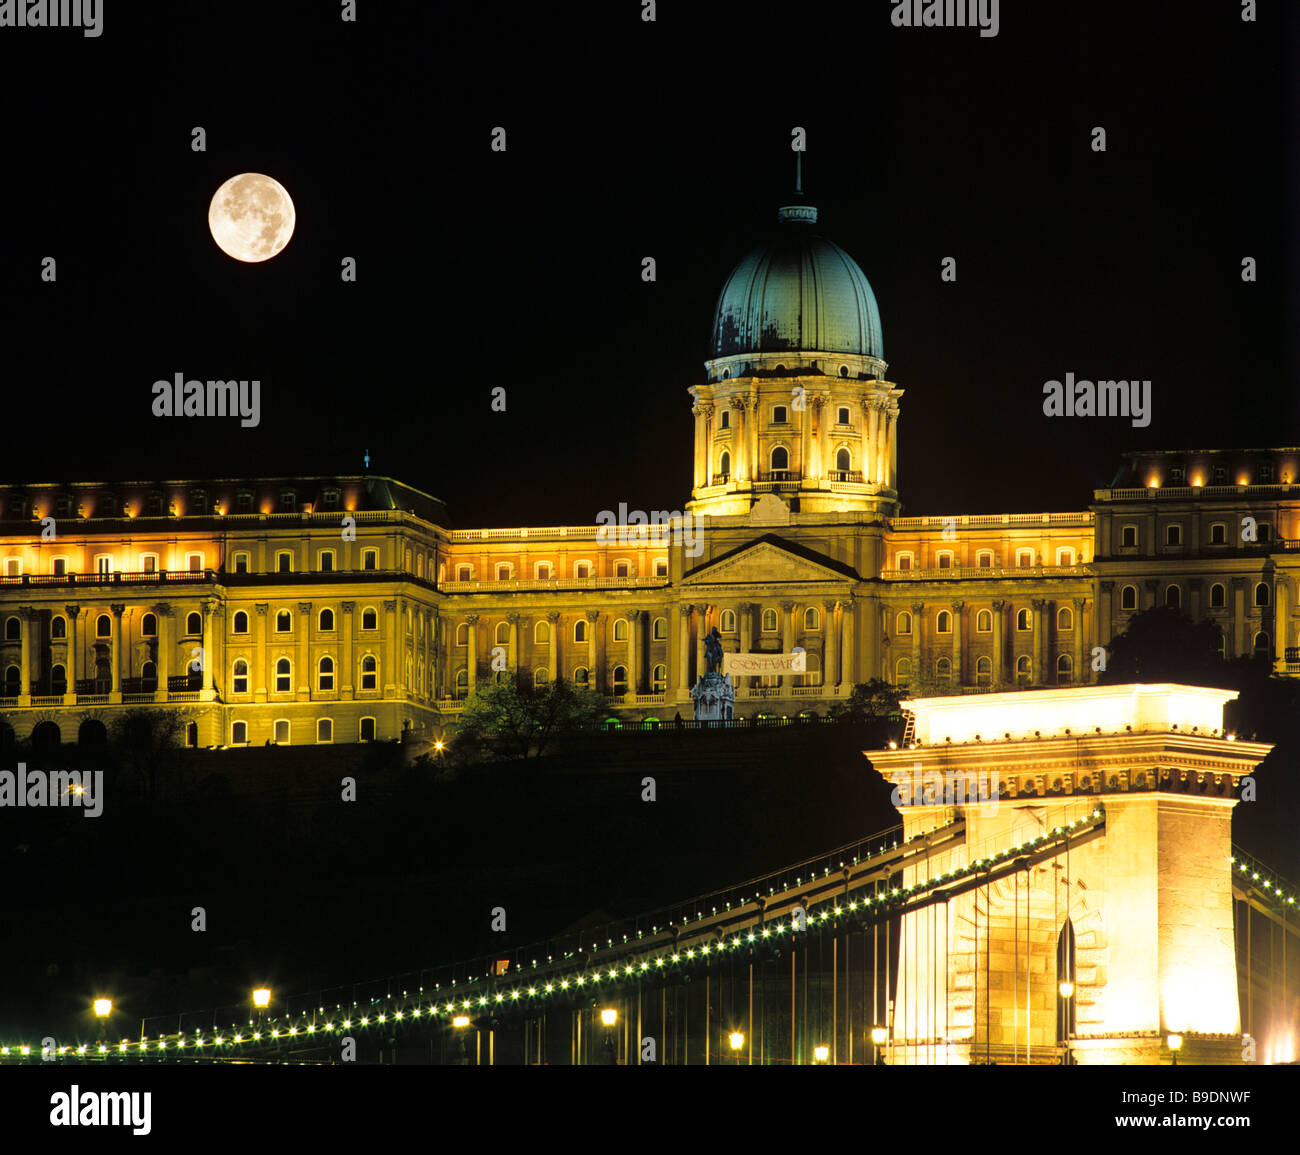 La colline du château et le palais de la nuit, pleine lune, château, pont suspendu, Danube, Budapest, Hongrie (montage) Banque D'Images